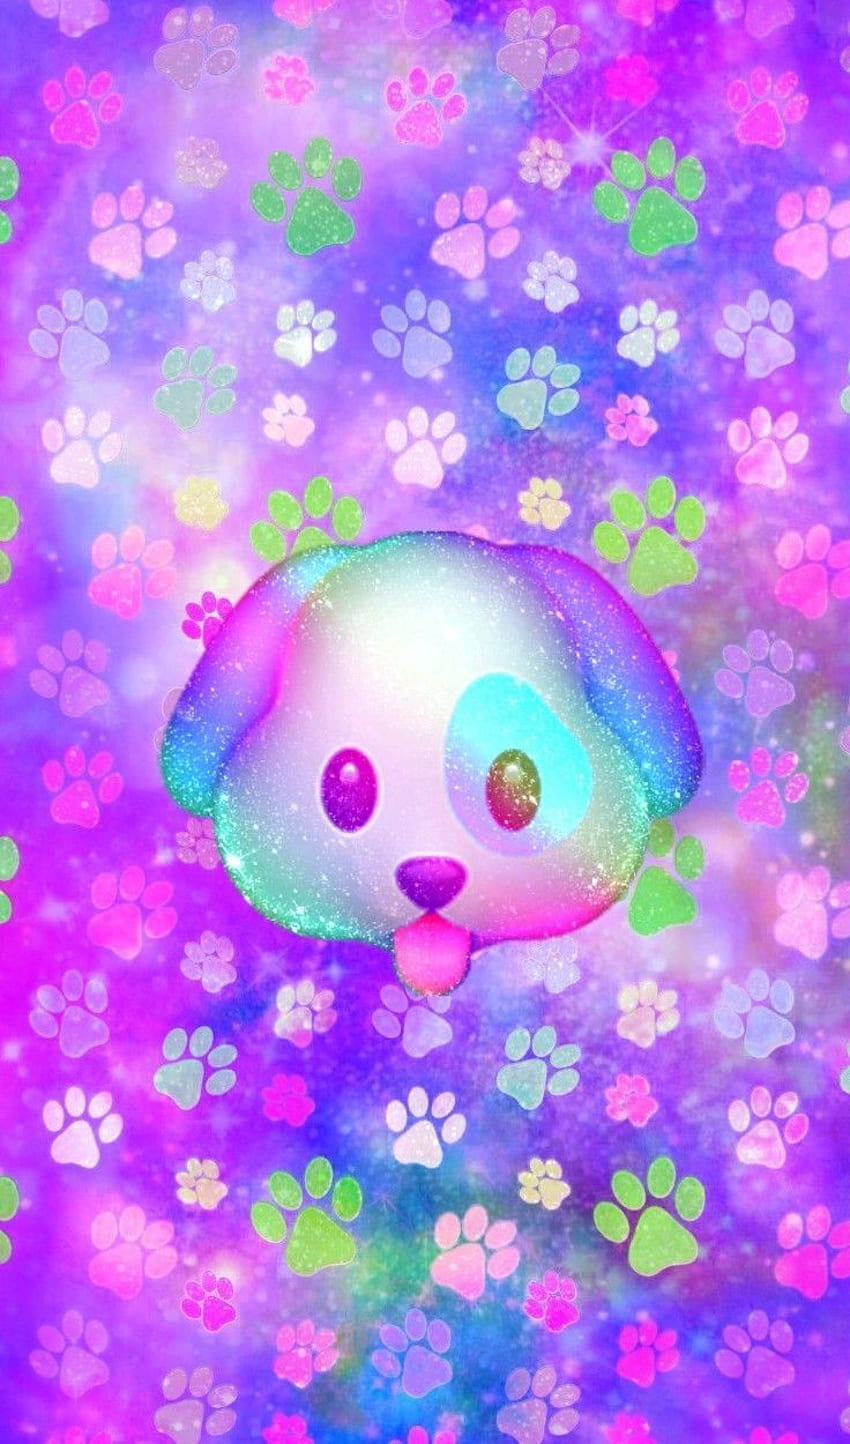 Galaxy Puppy Emoji, made by me. ωคɭɭρคρ૯૨ ૮૨૯คτเσทઽ, Girly Puppy HD phone wallpaper